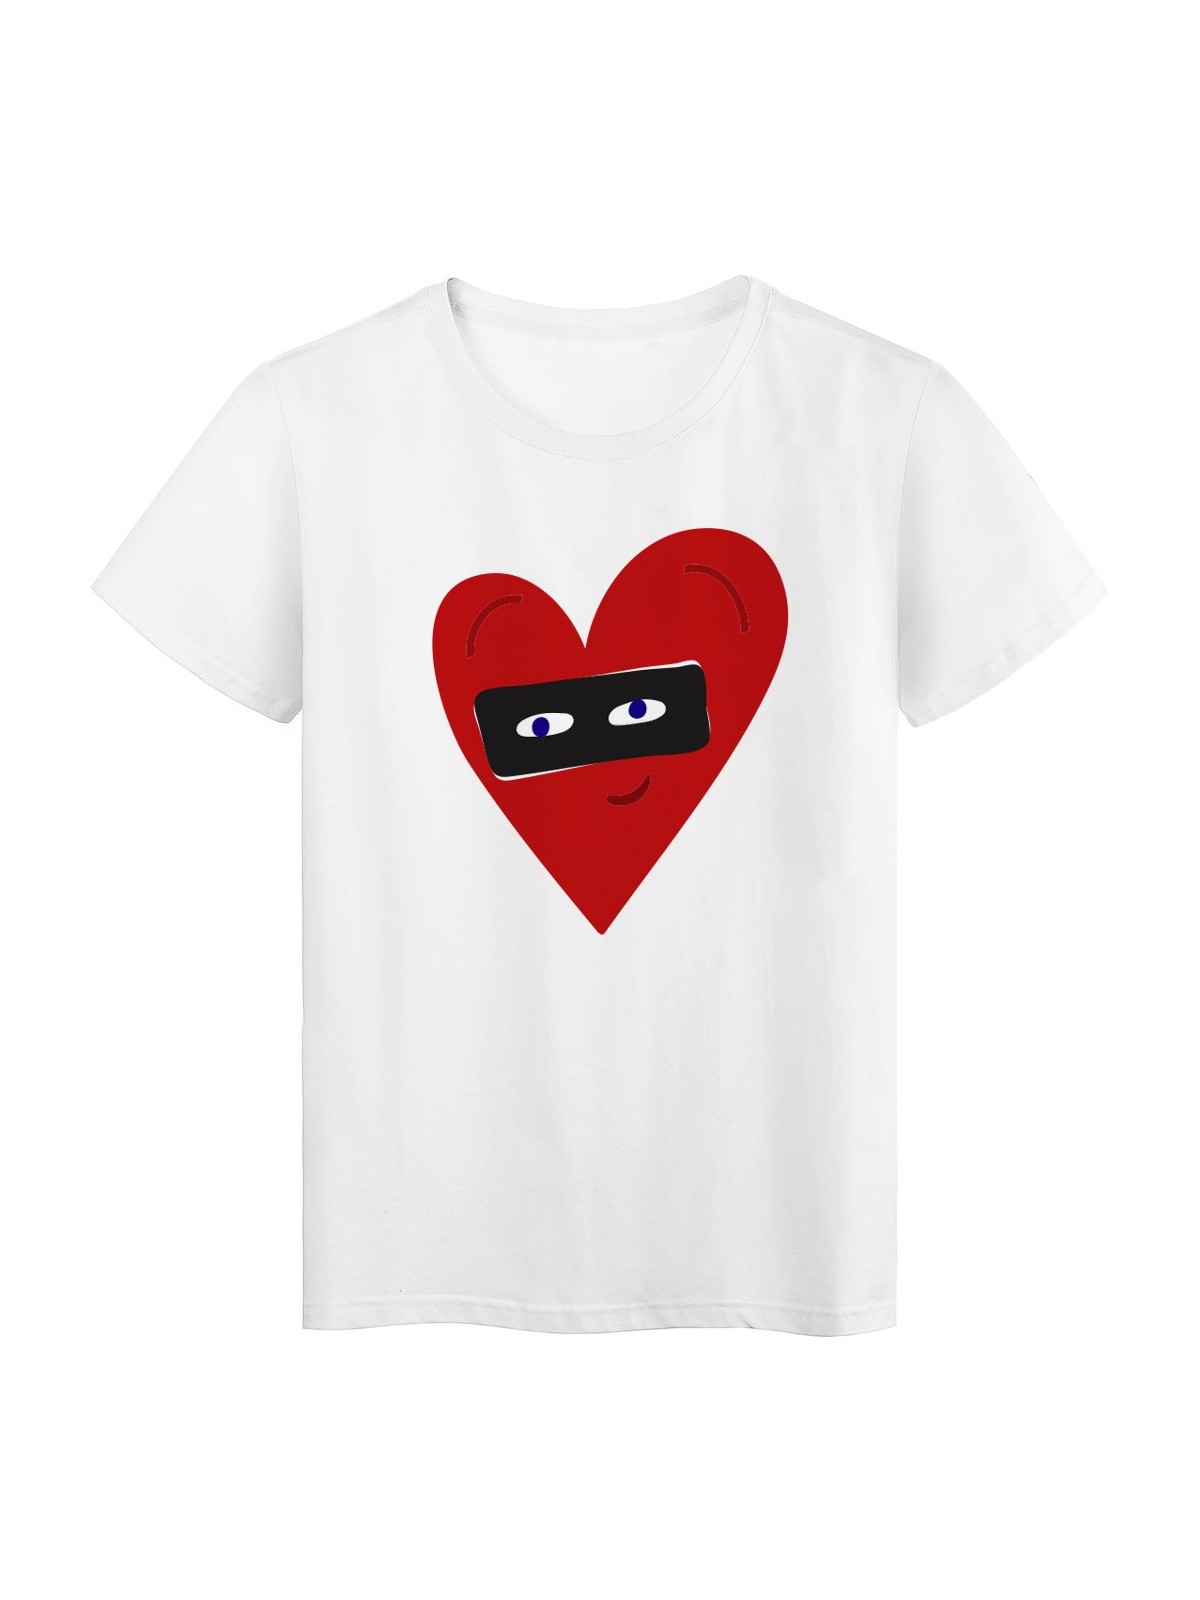 T-Shirt blanc CÅ“ur rouge yeux love masquÃ© rÃ©f Tee shirt 2138